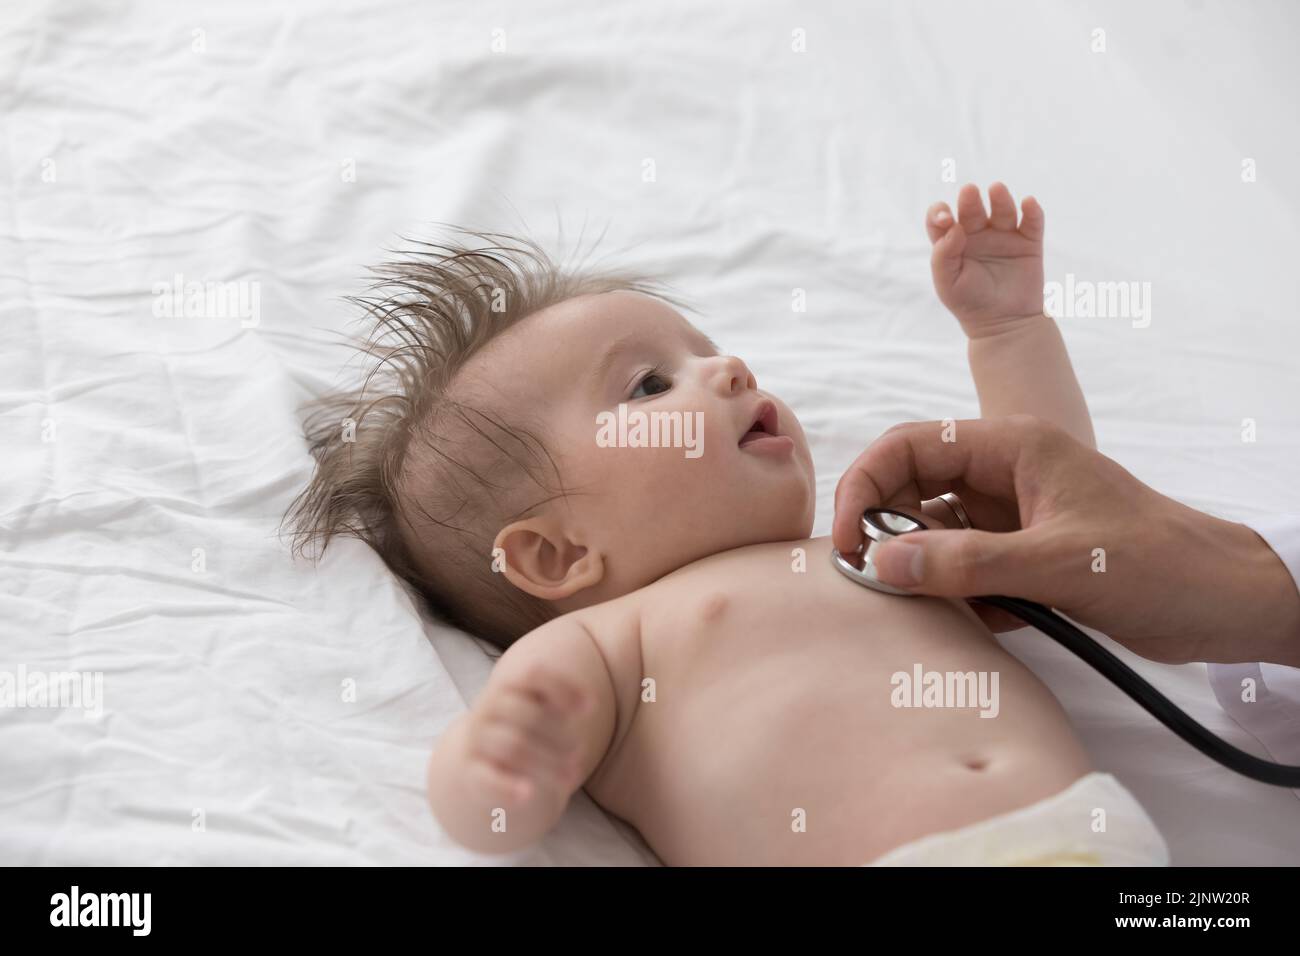 El pediatra sostiene que el estetoscopio escucha los latidos del corazón del recién nacido, de cerca Foto de stock